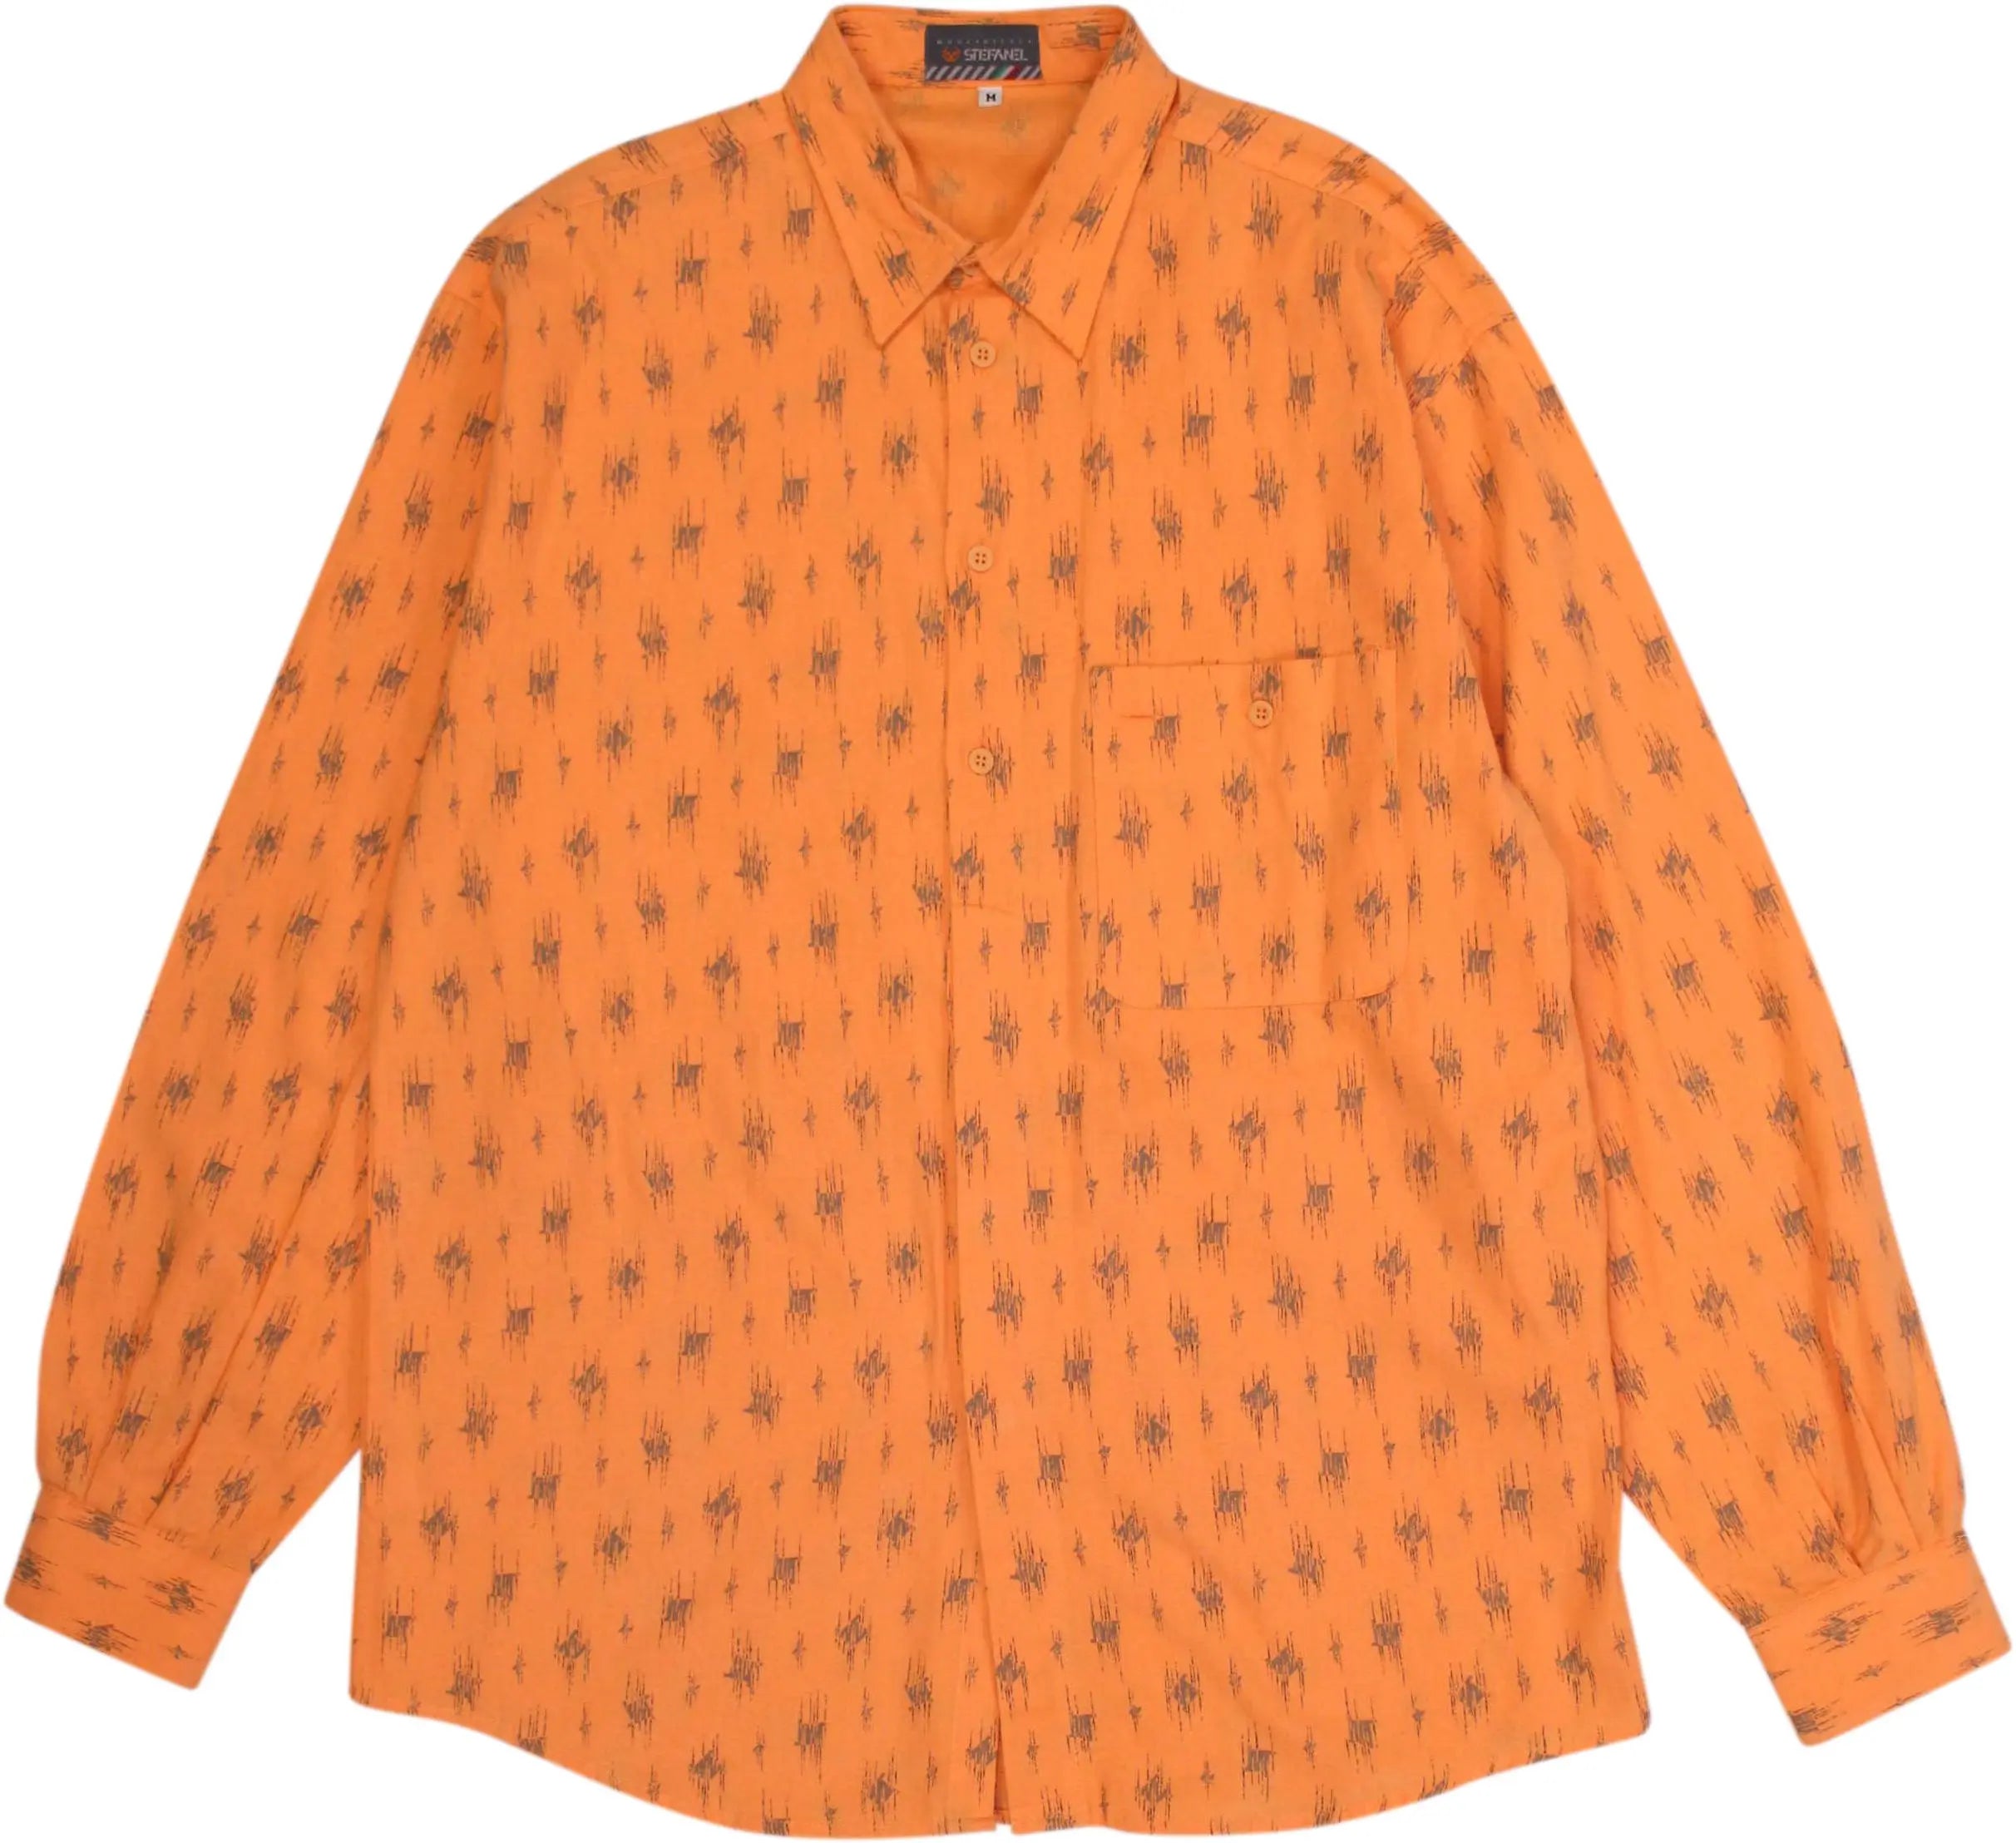 Stefanel - 70s Orange Shirt by Stefanel- ThriftTale.com - Vintage and second handclothing